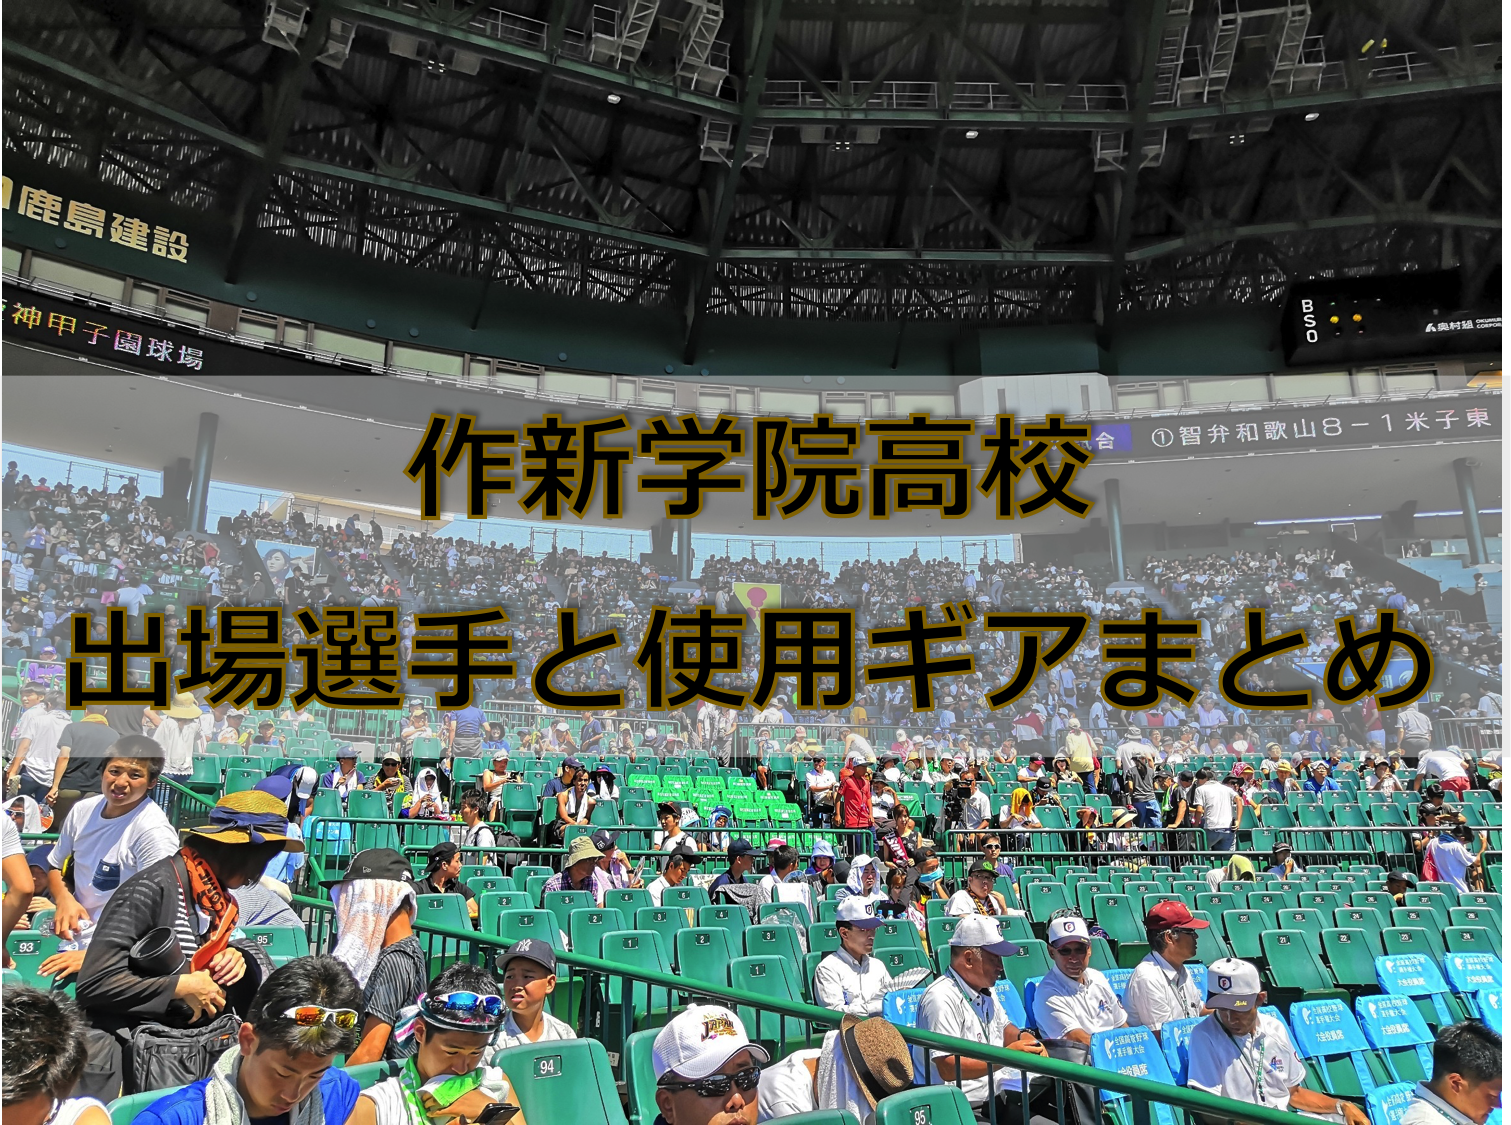 甲子園 作新学院高校ベンチ入りメンバーと野球道具まとめ 19年夏 バックネット裏から見る野球